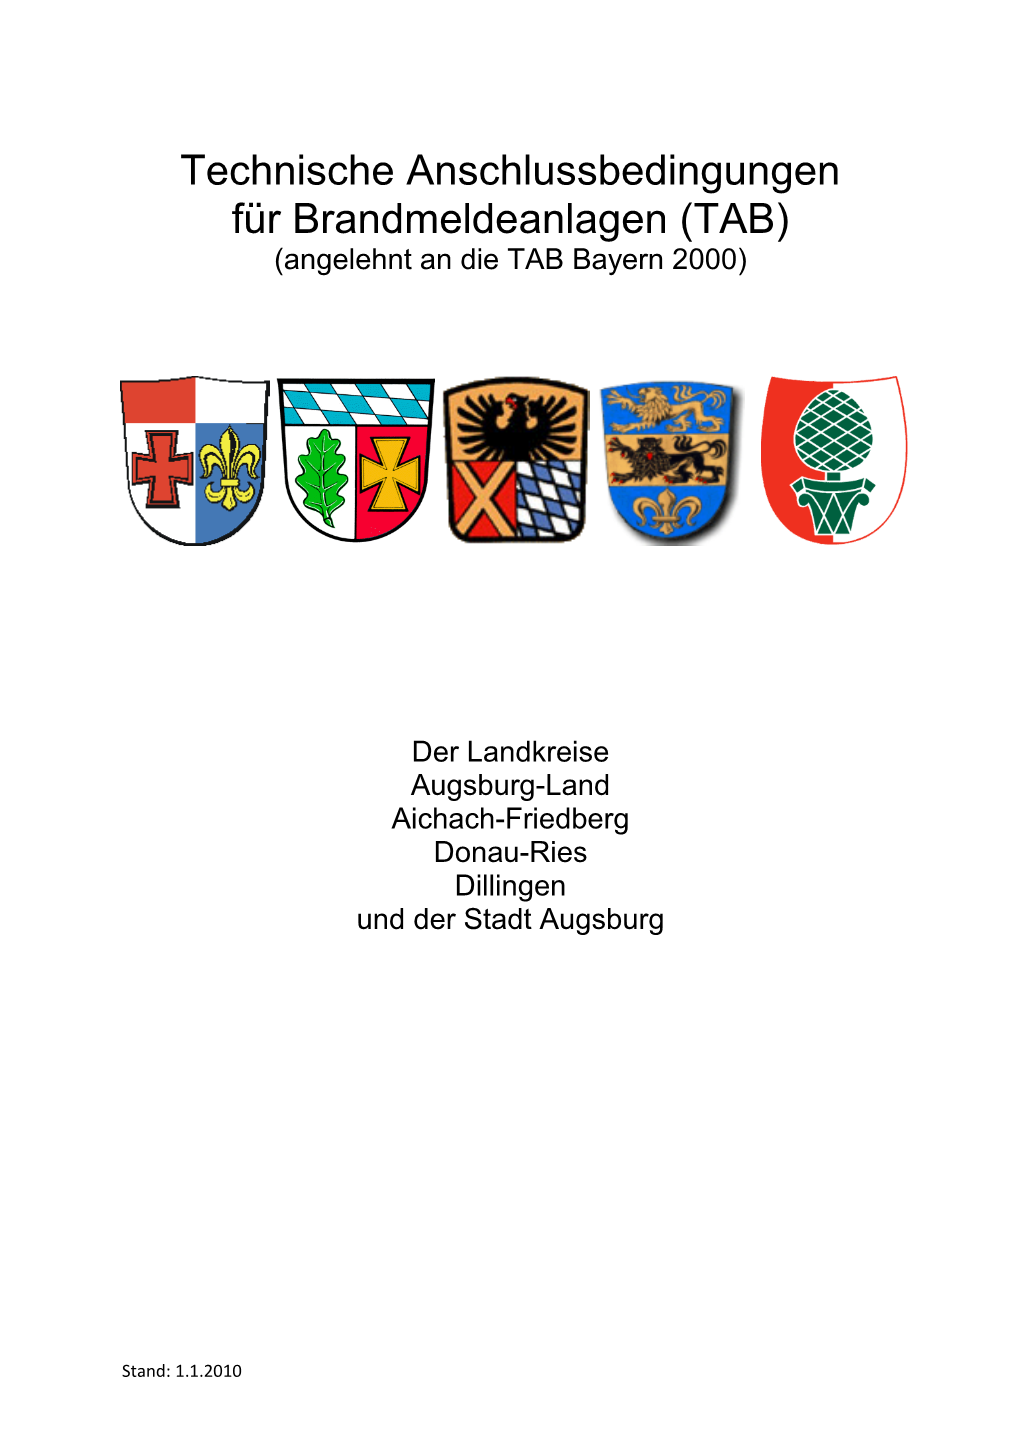 Technische Anschlussbedingungen Für Brandmeldeanlagen (TAB) (Angelehnt an Die TAB Bayern 2000)